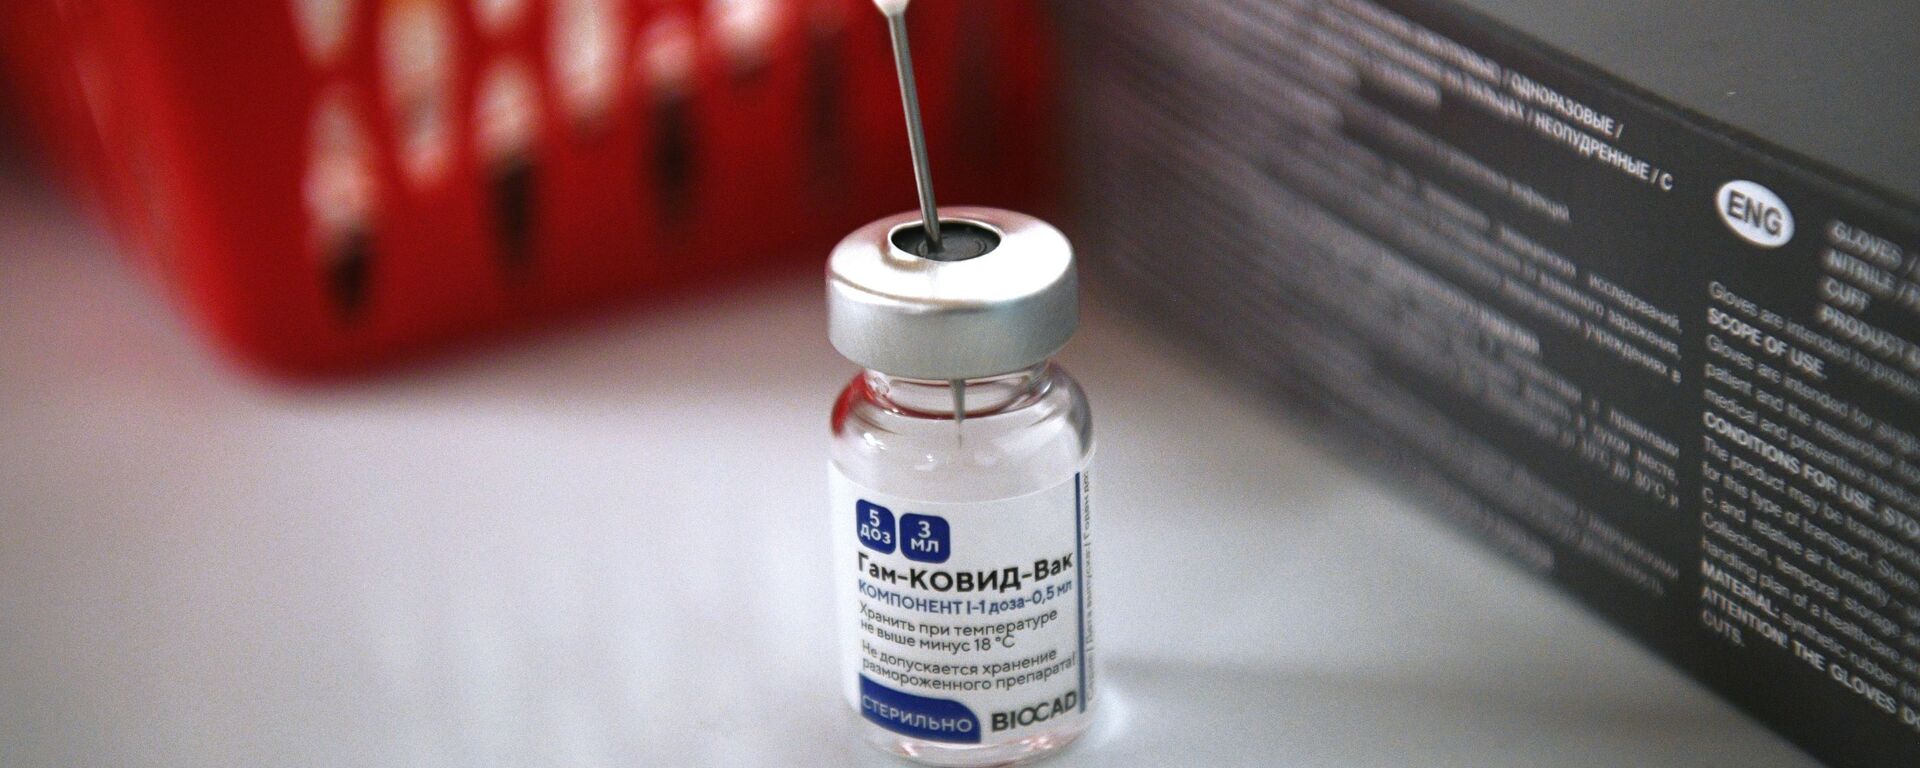 Vacuna rusa contra coronavirus Sputnik V - Sputnik Mundo, 1920, 15.02.2021